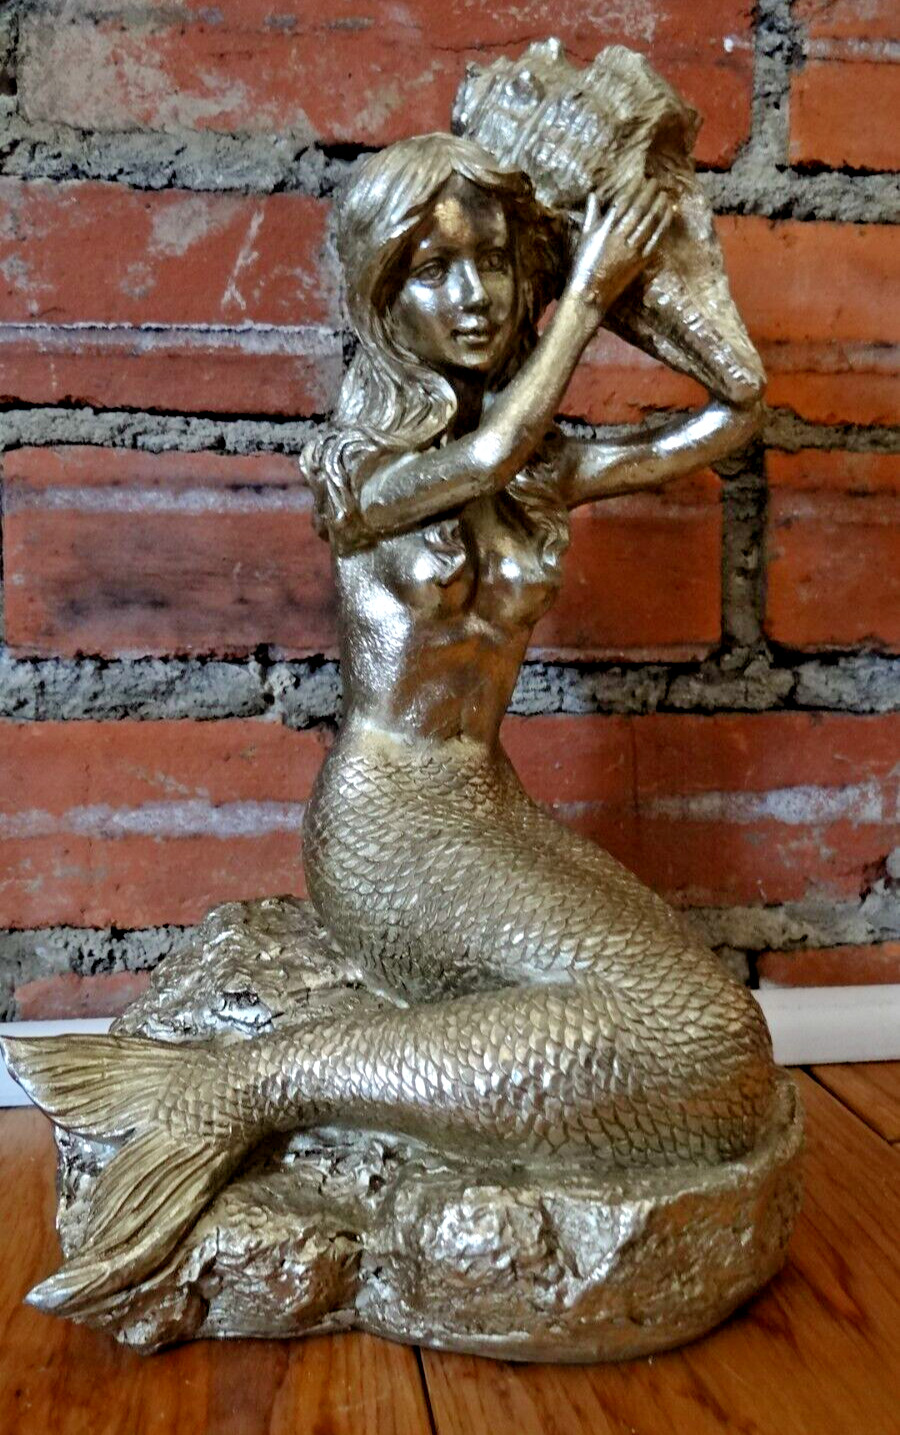 Mermaid Holding A Seashell Figurine 11” Tall